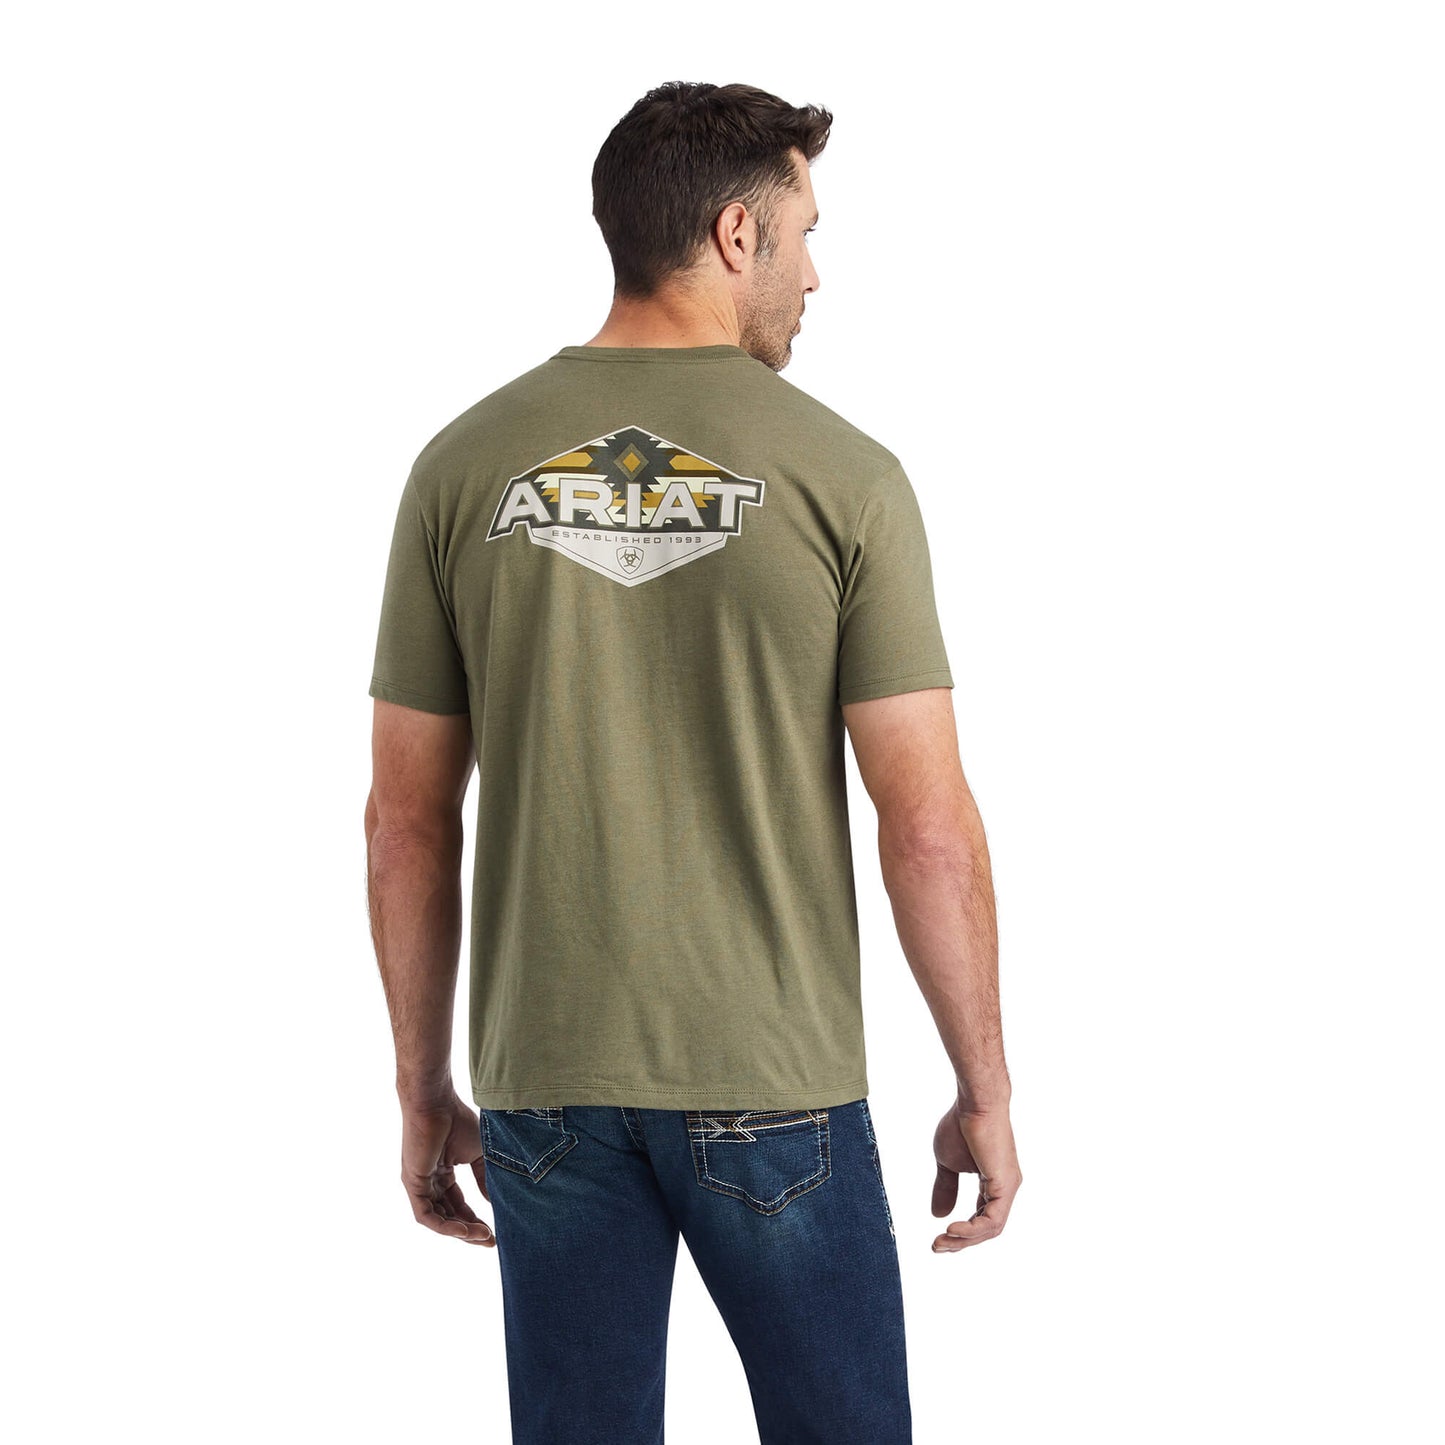 Ariat Hexafill T-Shirt Military Heather Green Men's